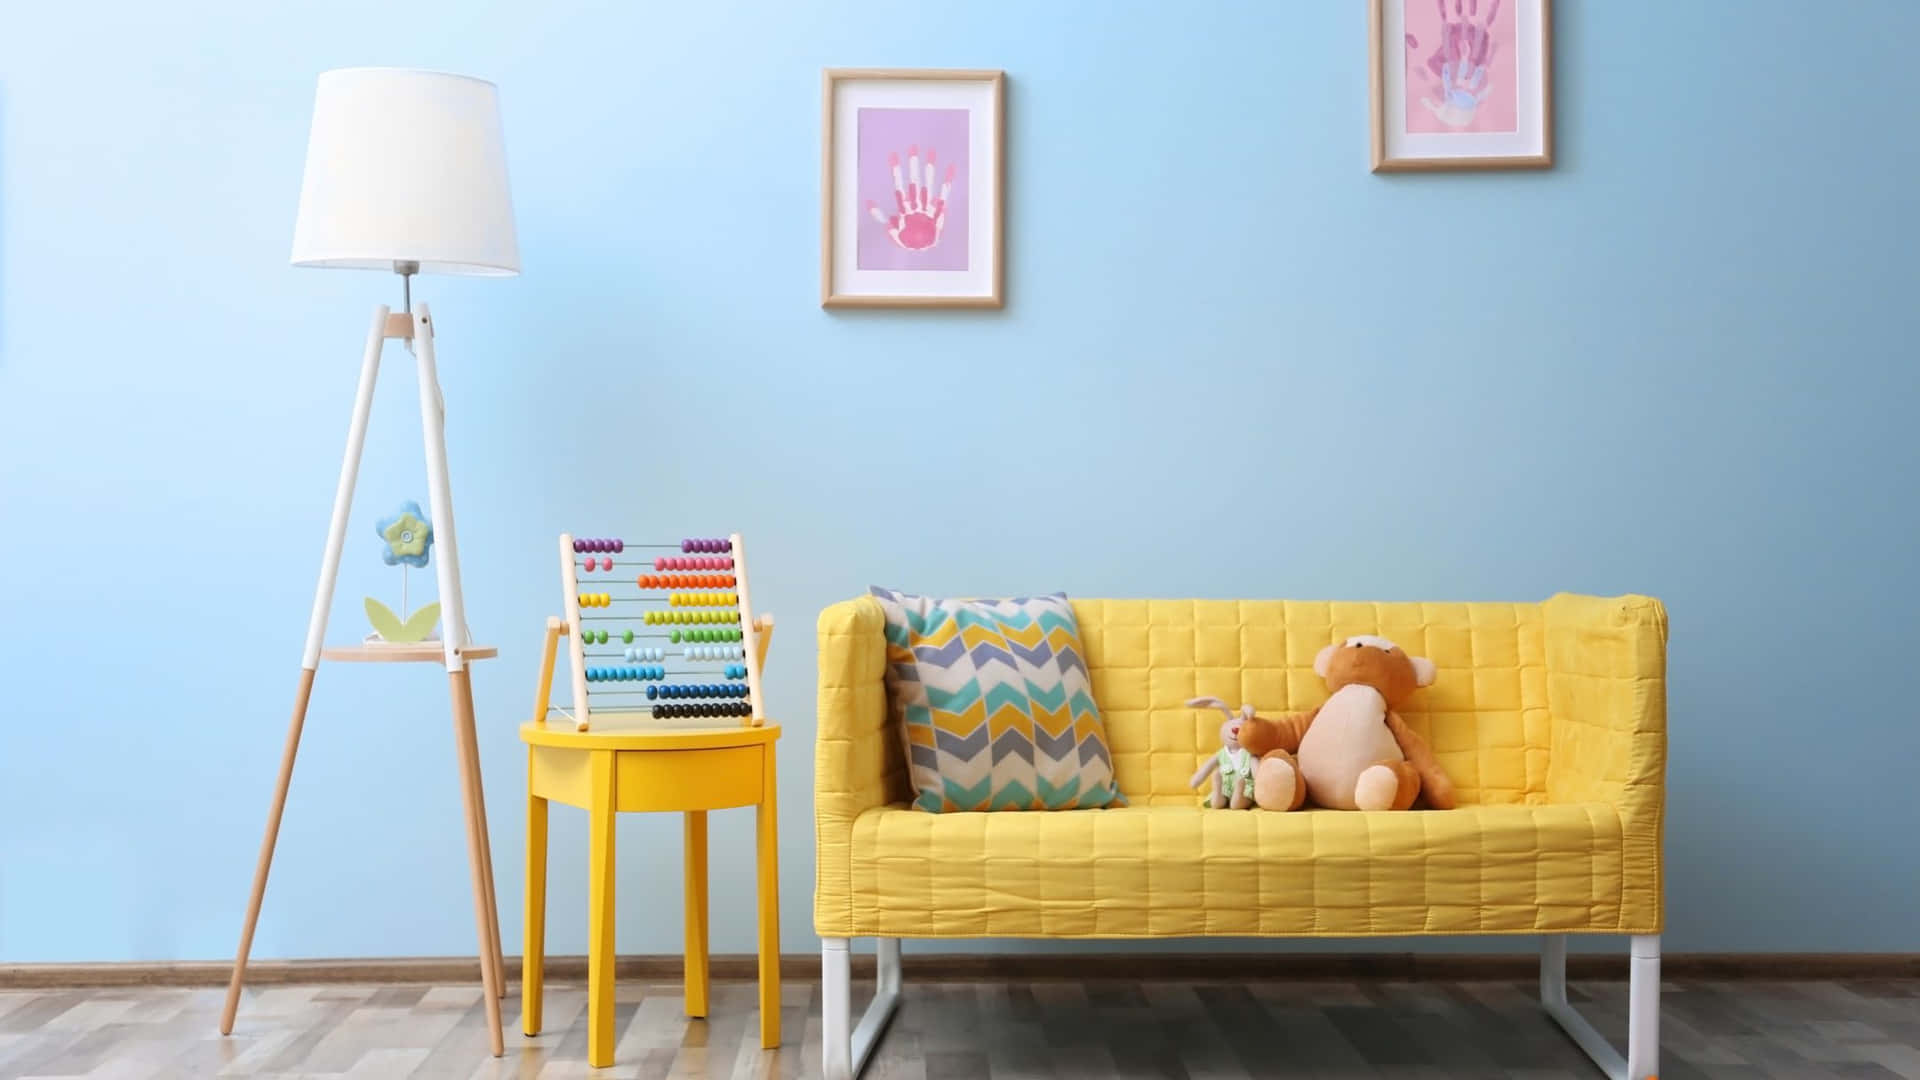 Unsofá Amarillo Y Un Peluche En Una Habitación Con Paredes Azules